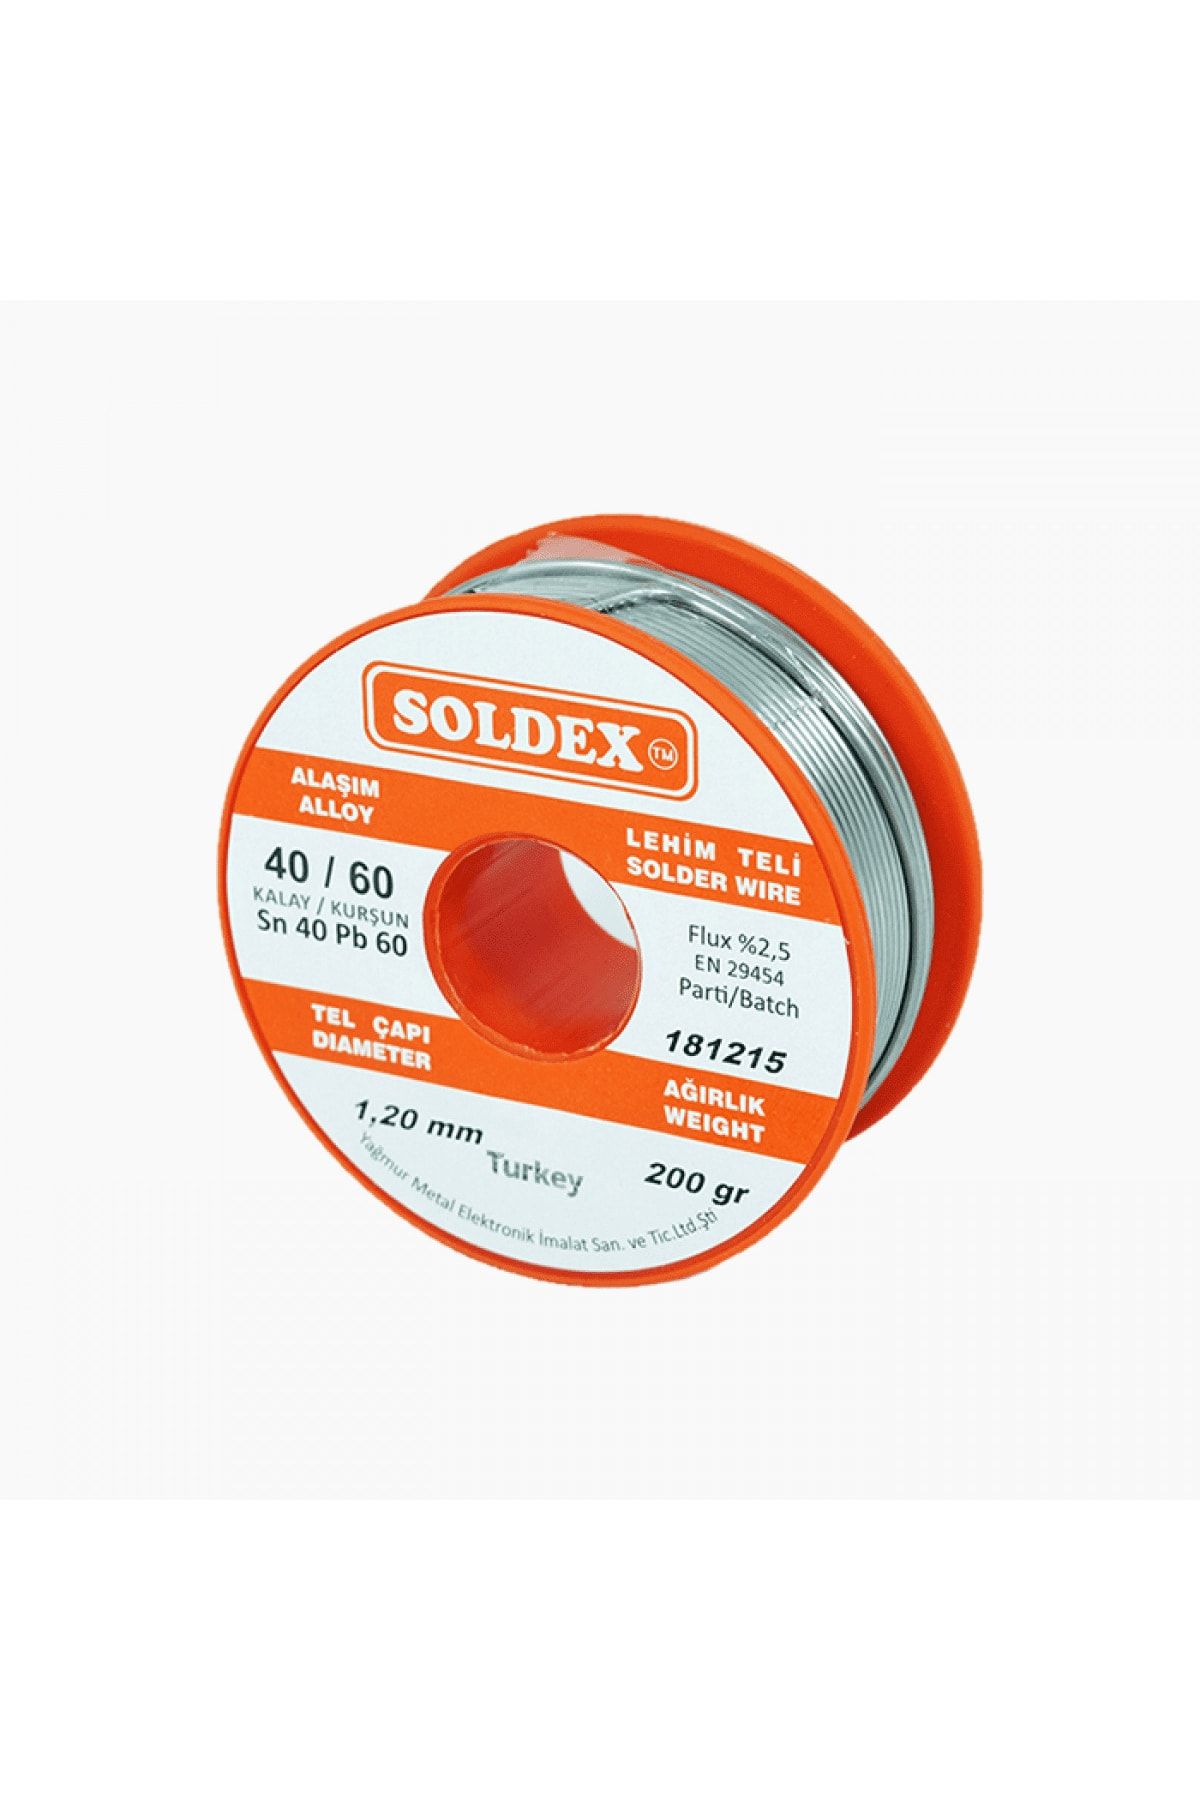 Soldex 40/60 1,20 Mm Lehim Teli 200 gr